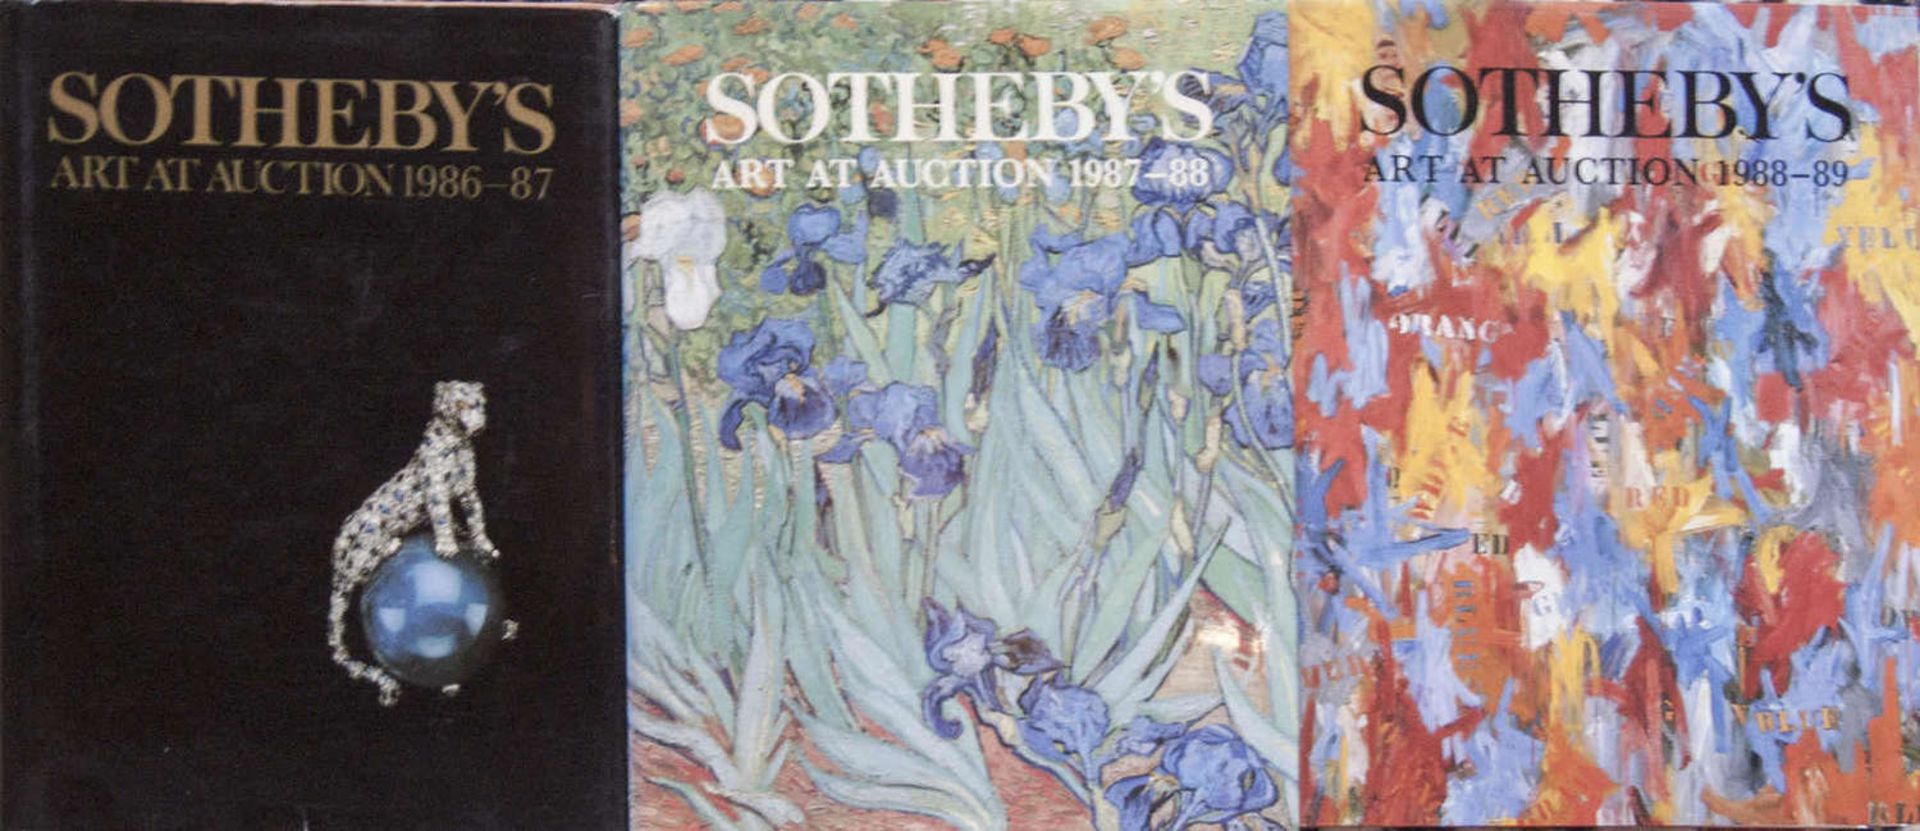 Drei Auktionskataloge, Art at Auction, Sotheby, 1986/87, 1987/88 und 1988/89. Guter Zustand.